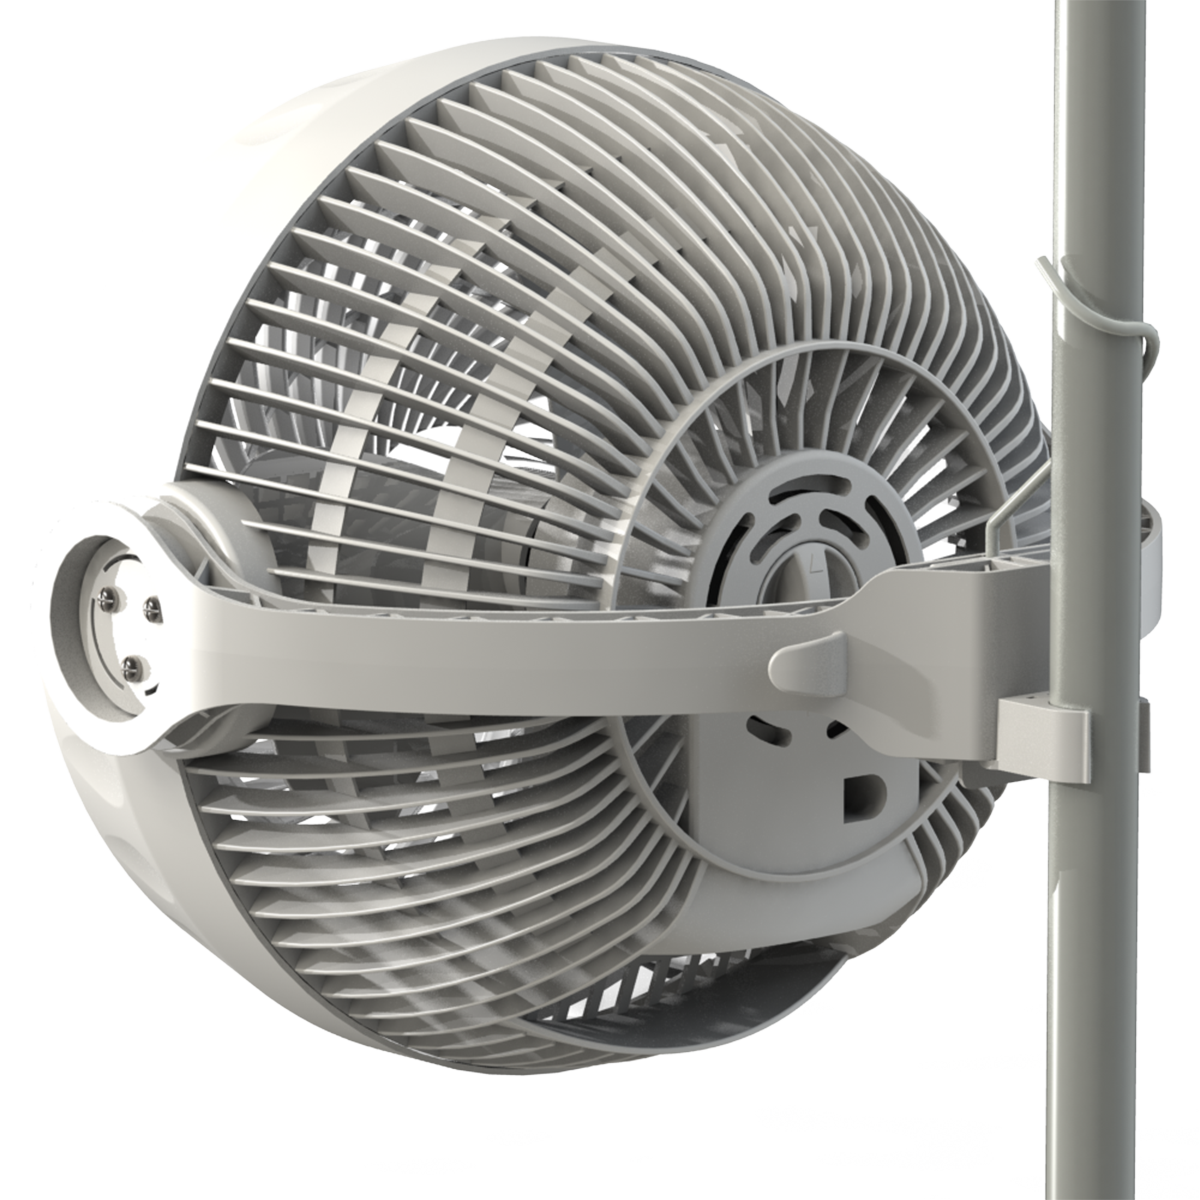 Typhoon 200 2sp. Вентилятор Monkey Fan 30 Вт. Вентилятор Secret Jardin Monkey Fan 30. Вентилятор Monkey Fan 16 w. Вентилятор Monkey Fan, 16 w (двухскоростной.